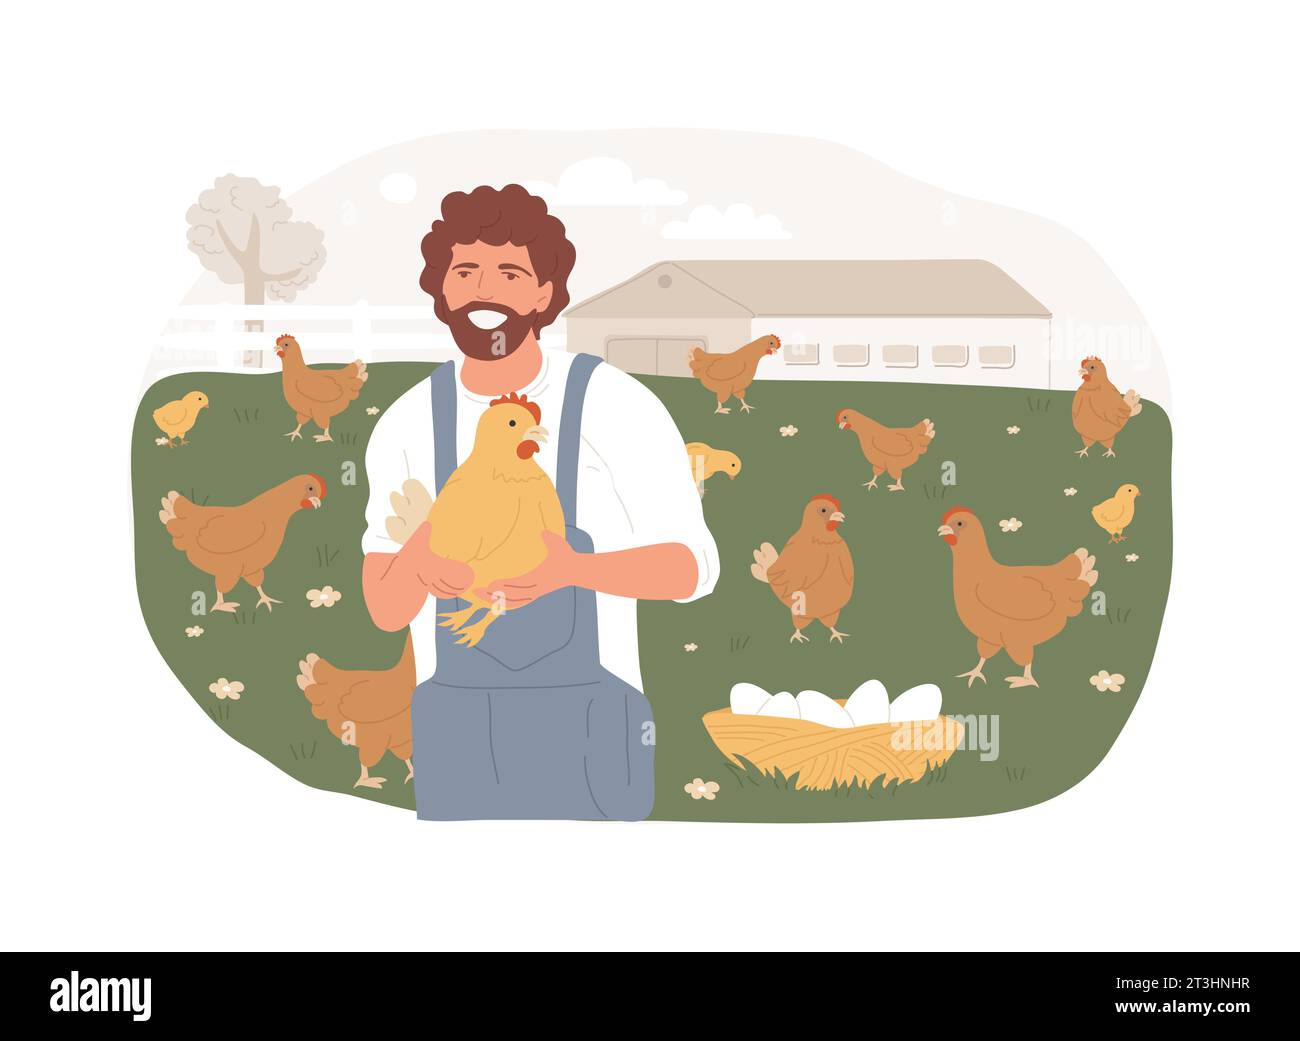 Frei laufende Hühner und Eier isolierte Konzept-Vektor-Illustration. Käfigfreie Eier, Bio-Lebensmittel, nährstoffreiche Ernährung, glückliche Hühner, Lebensmittelkennzeichnung, Vektorkonzept für die organische Zertifizierung. Stock Vektor